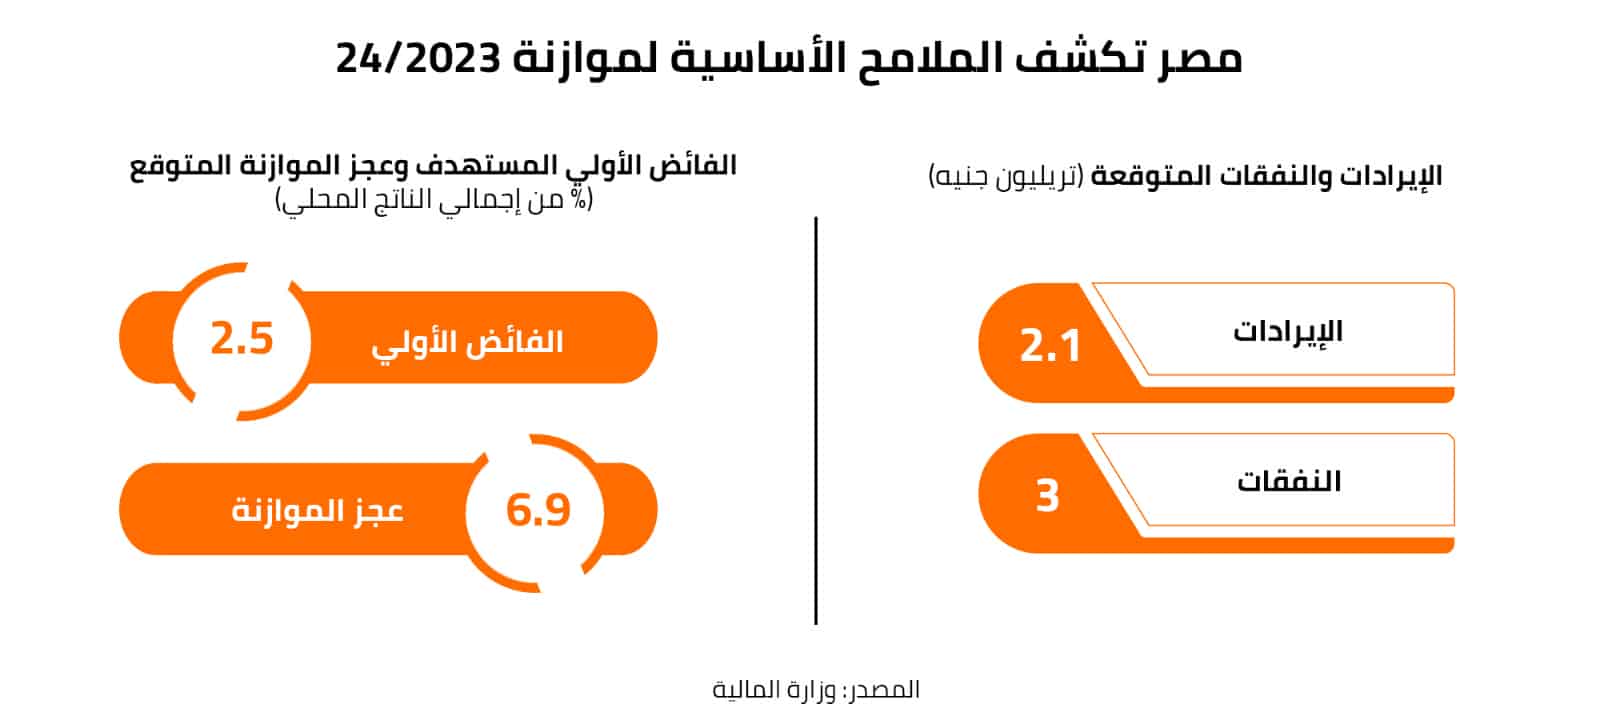 مصر تكشف الملامح الأساسية لموازنة 2023/24 